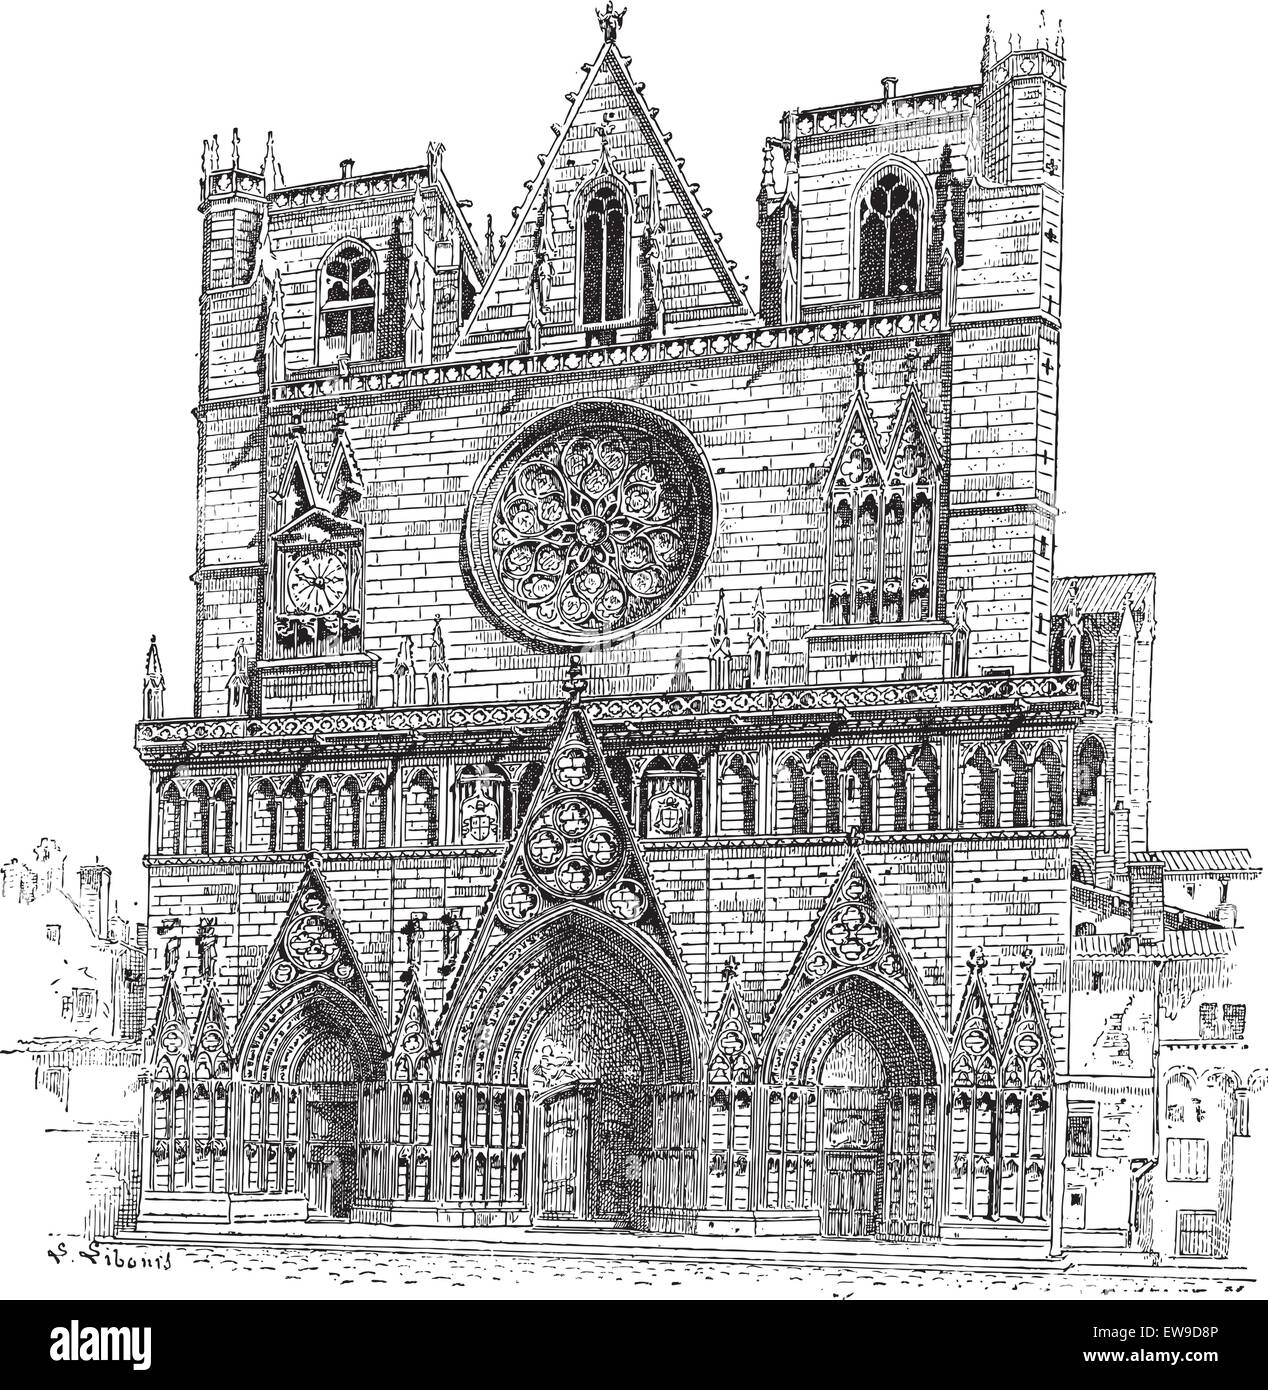 La Cathédrale de Lyon à Lyon,France, vintage engraved illustration. Dictionnaire des mots et des choses - Larive et Fleury - 1895 Illustration de Vecteur